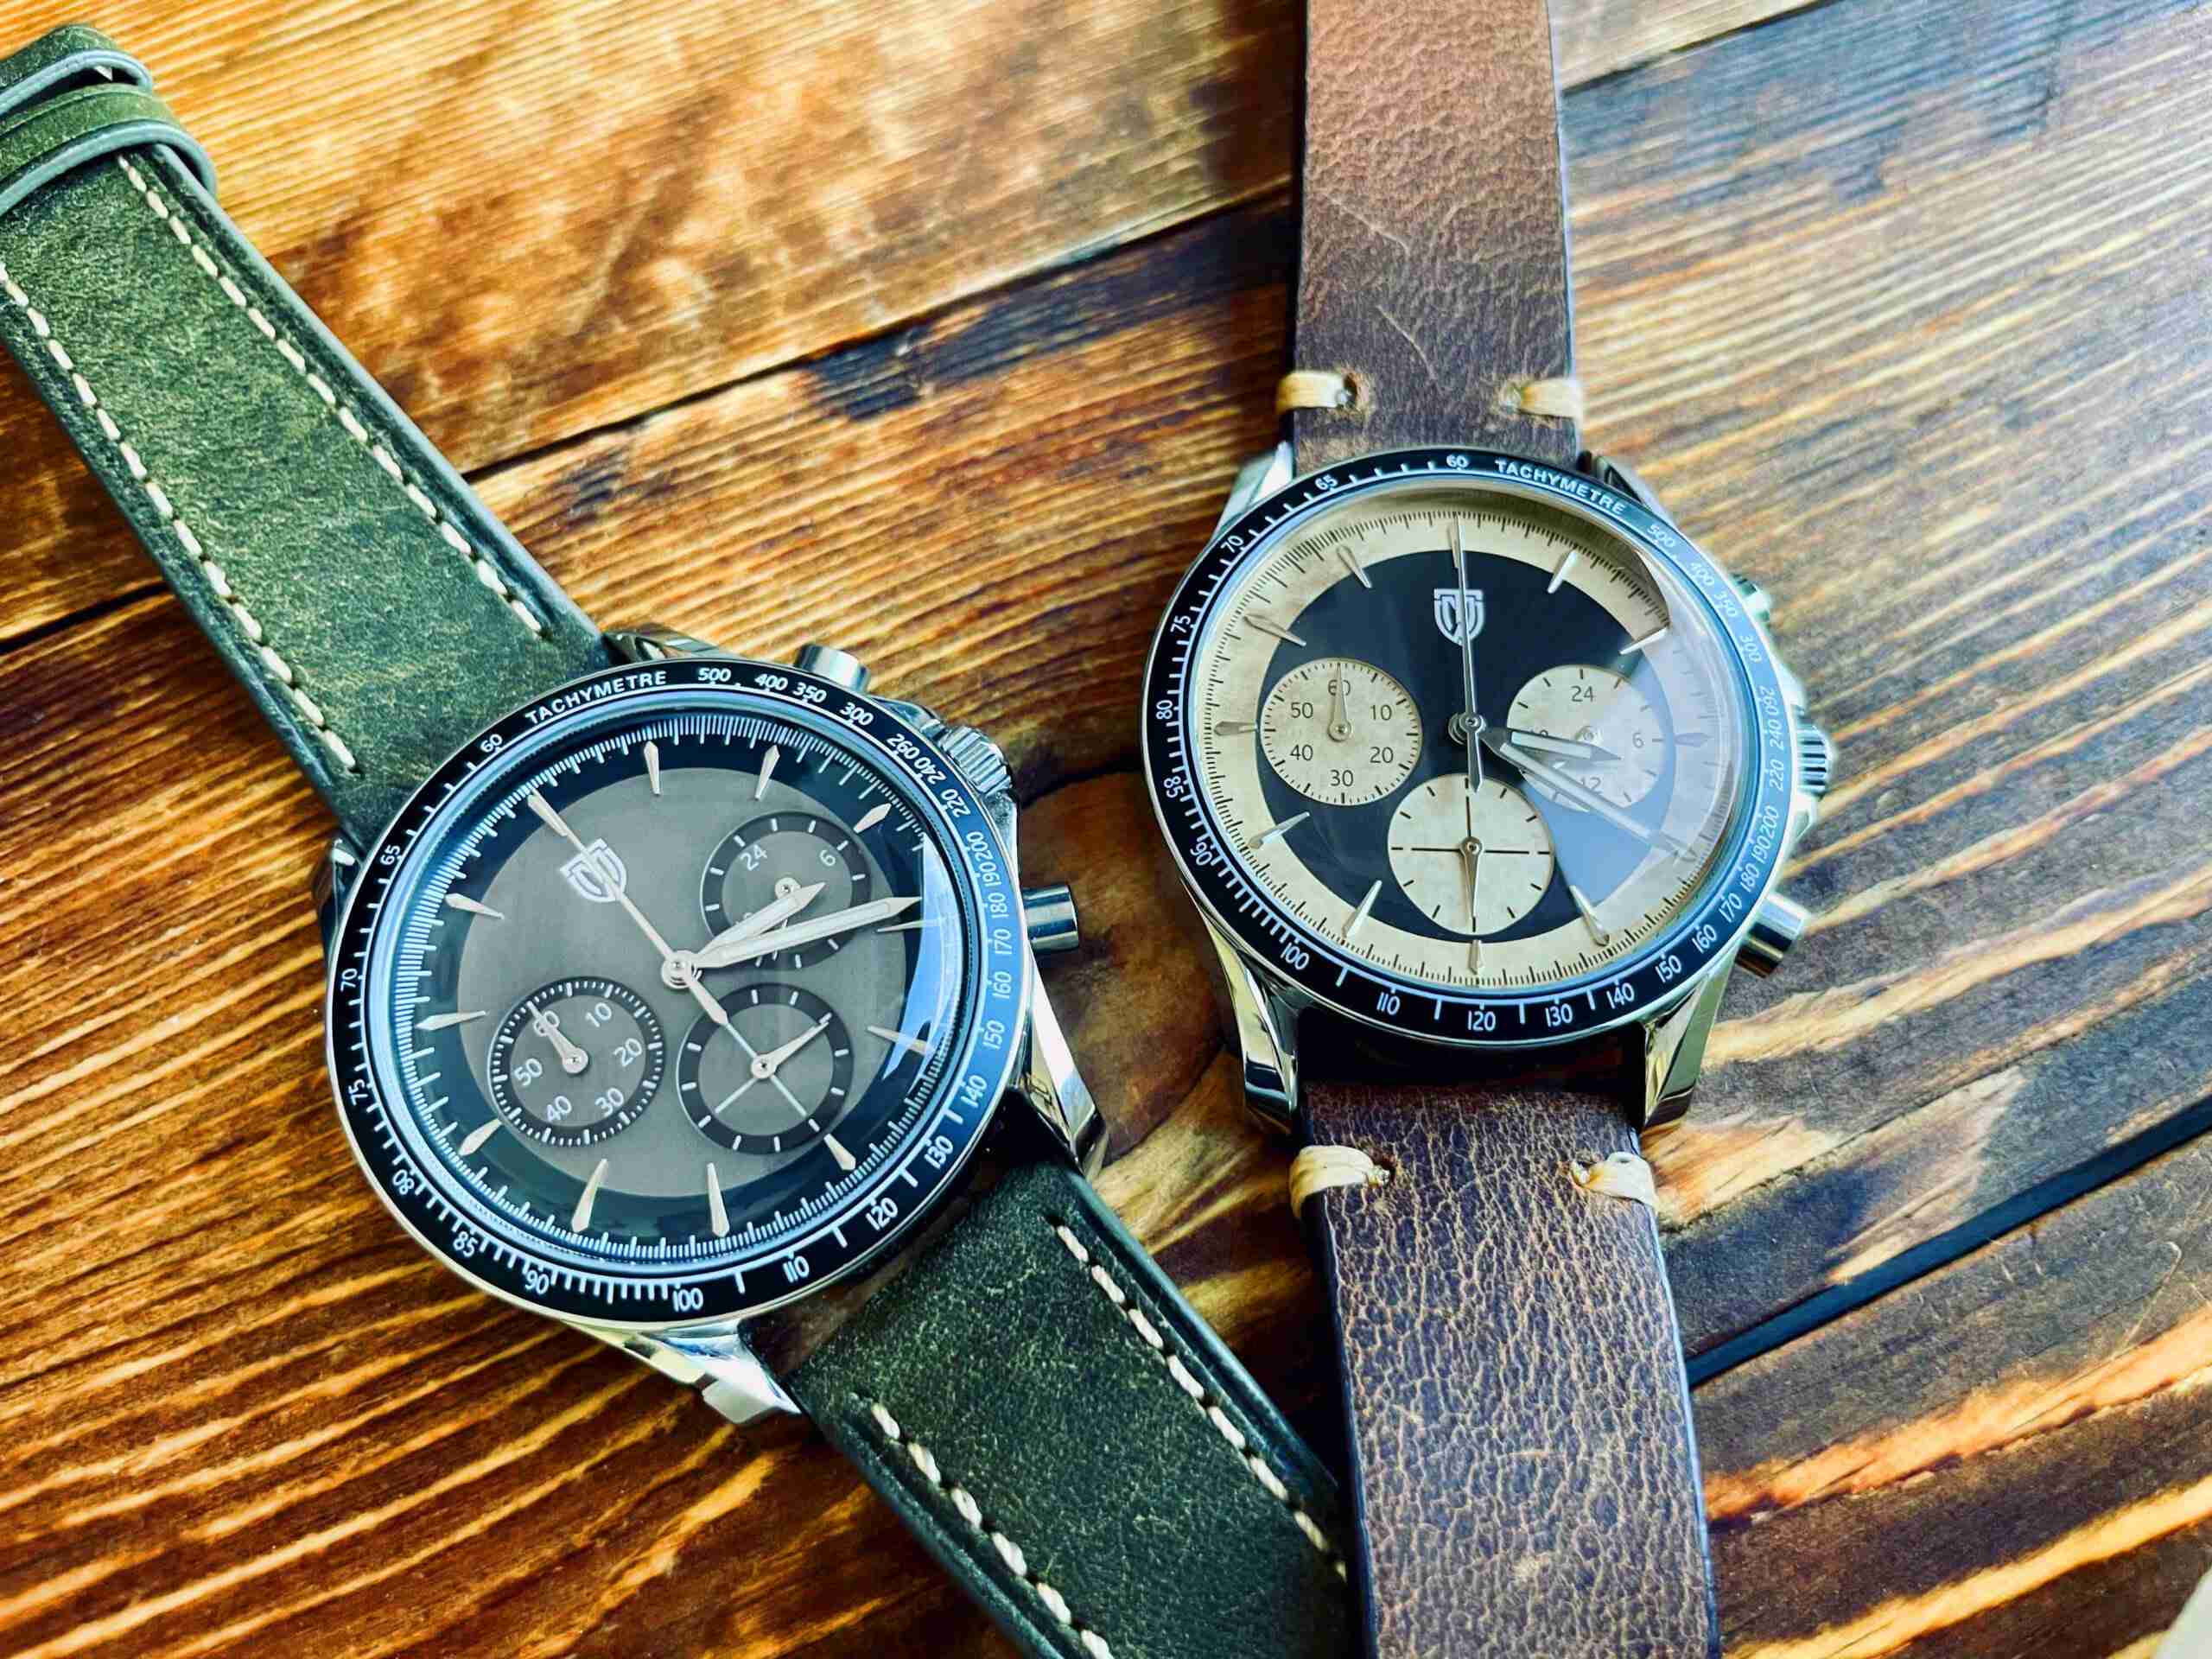 MT&W Watch представляет шесть хронографов в винтажном стиле с циферблатами из патины